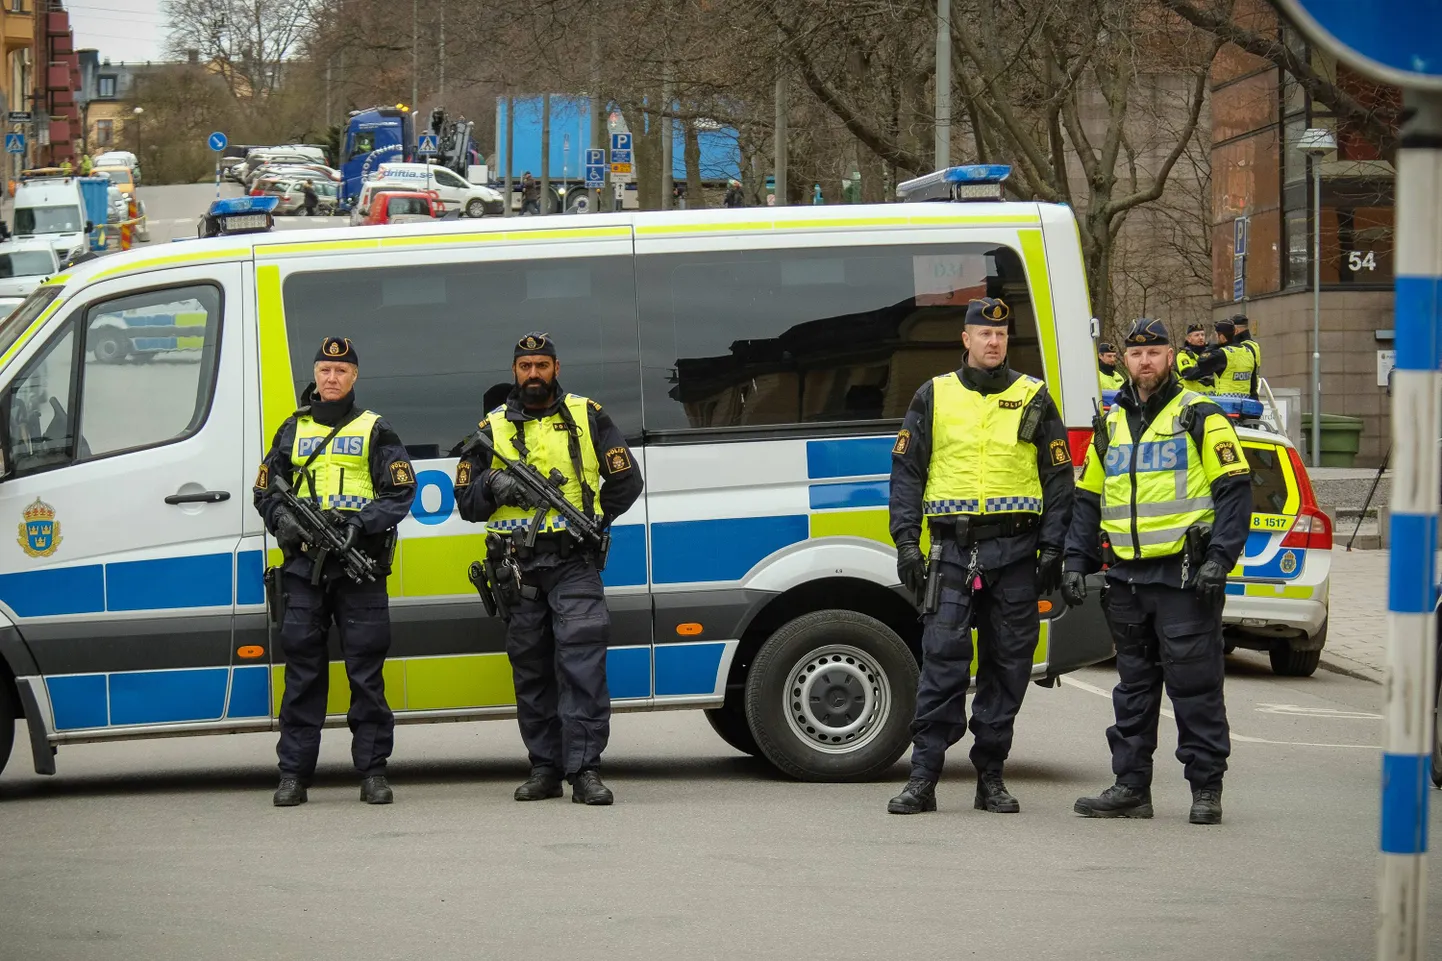 Rootsi politseinikud. Pilt pole seotud antud juhtumiga.